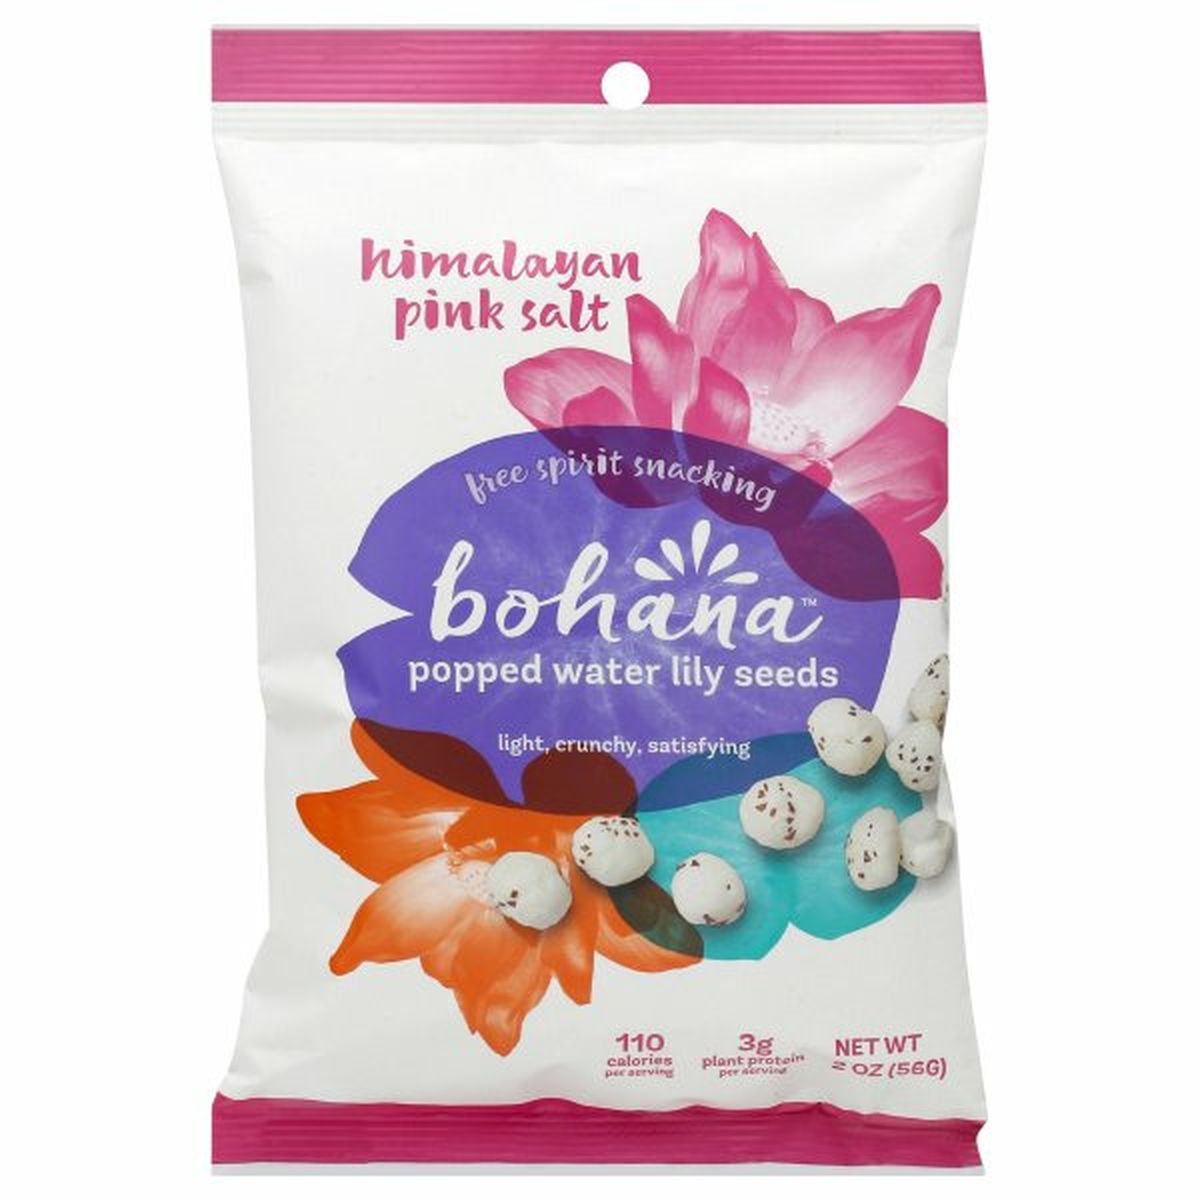 Calories in Bohana Water Lily Seeds, Popped, Himalayan Pink Salt